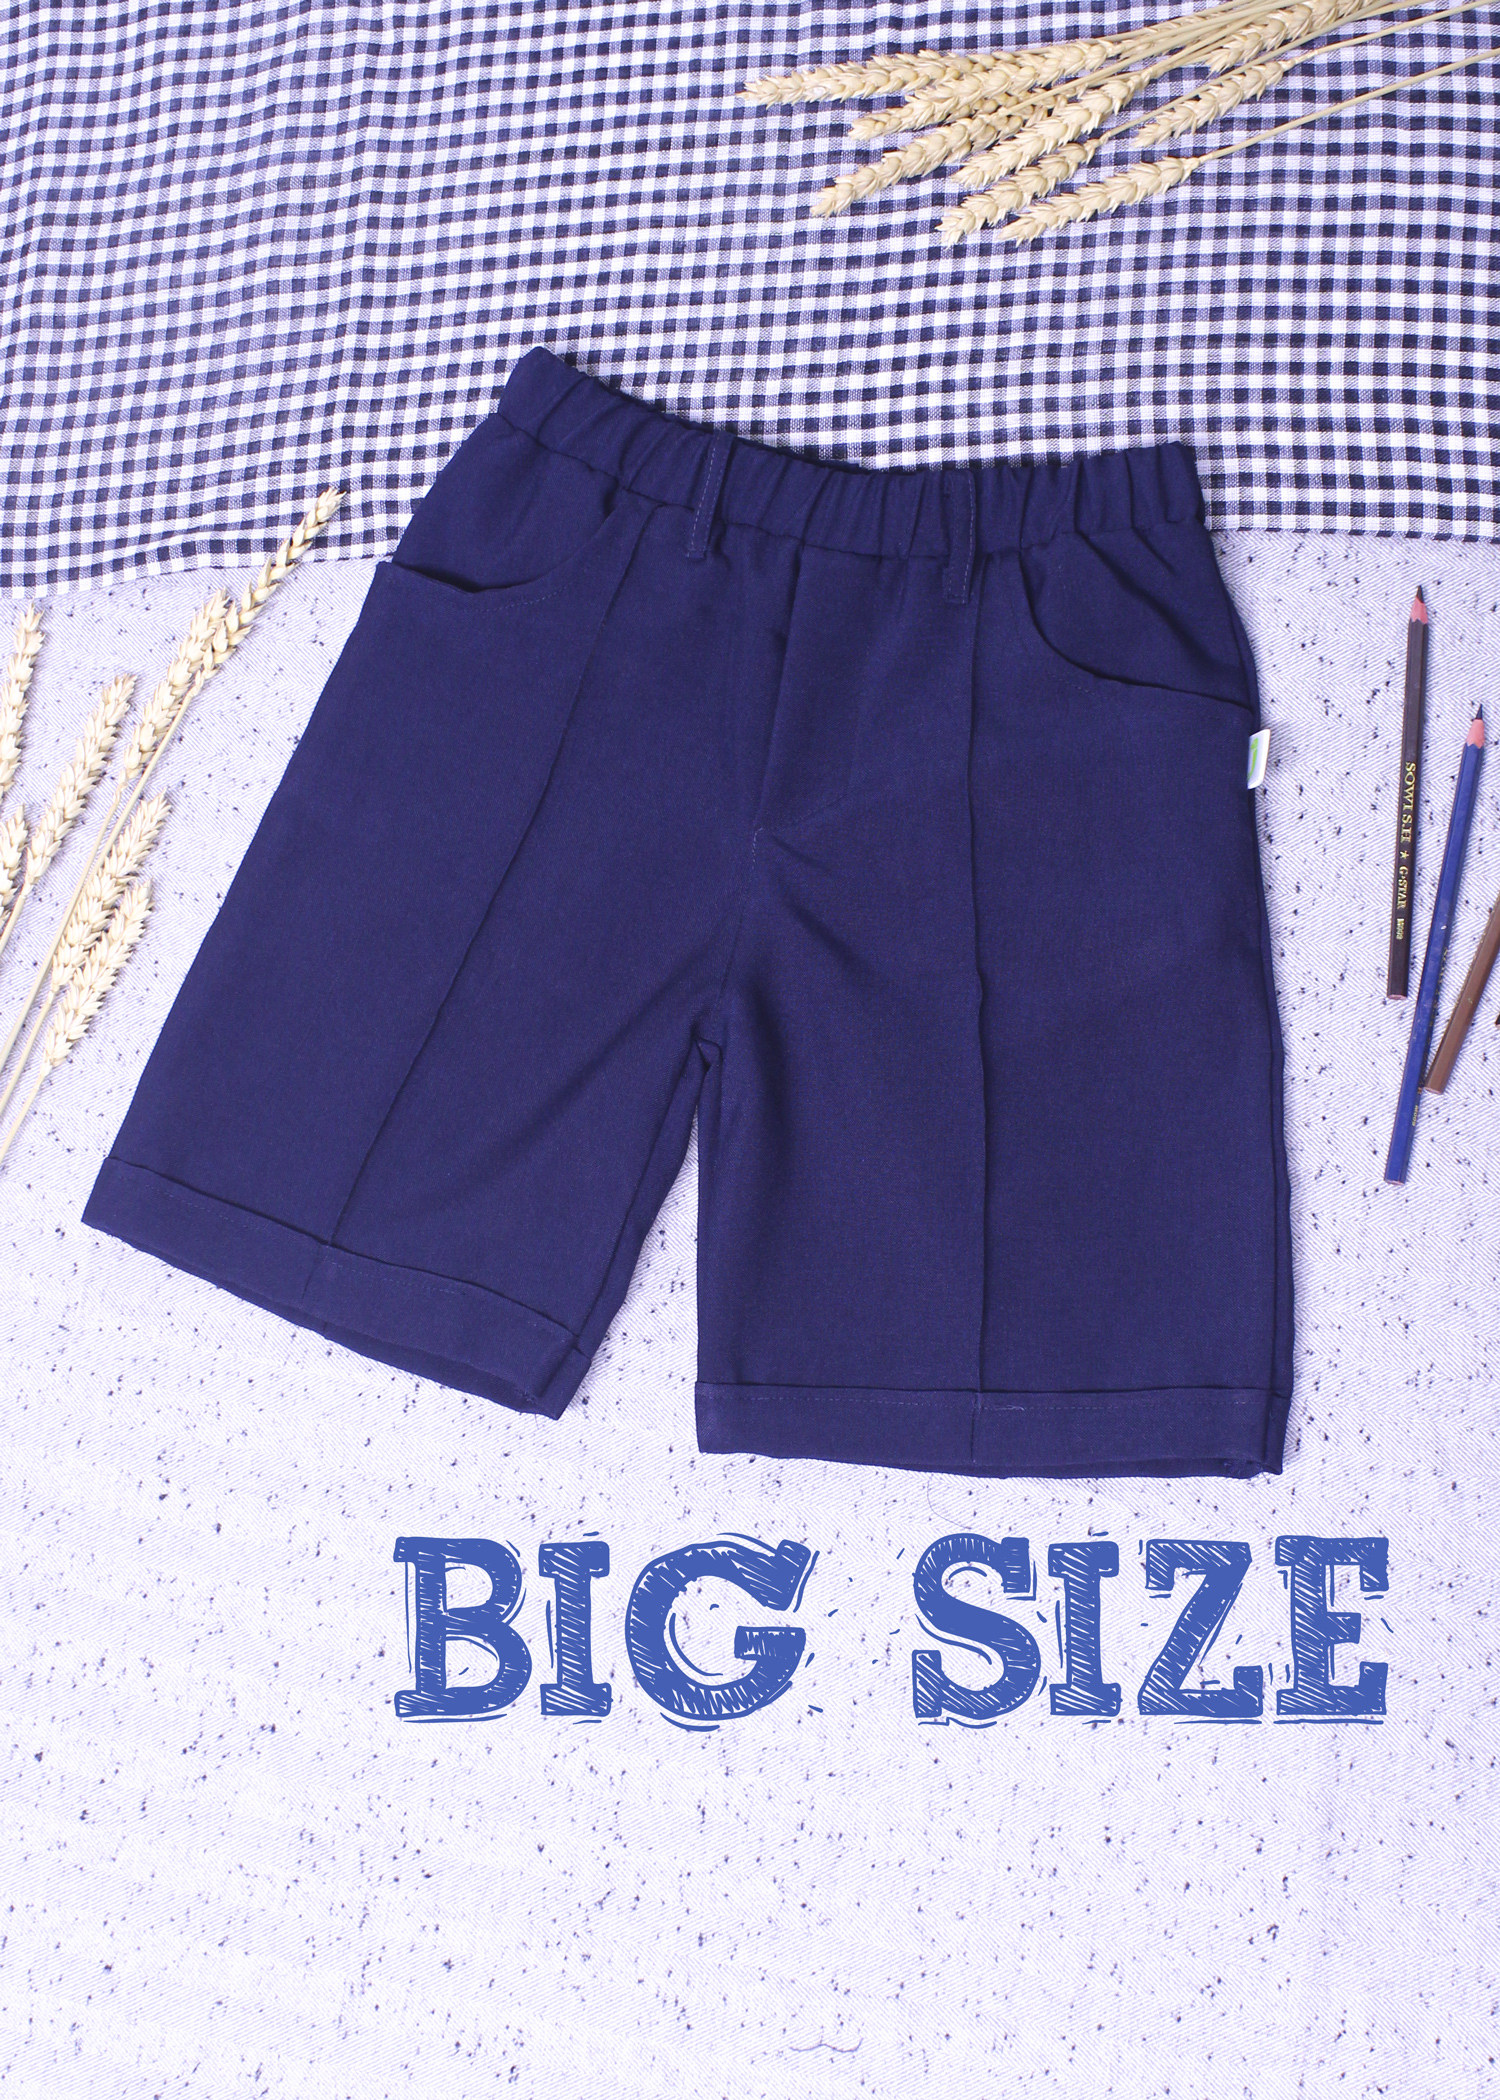 Quần áo học sinh big size, bộ đồng phục học sinh cho bé ngoại cỡ, phát triển tốt, vải mềm, mát, chất lượng, thấm hút mồ hôi